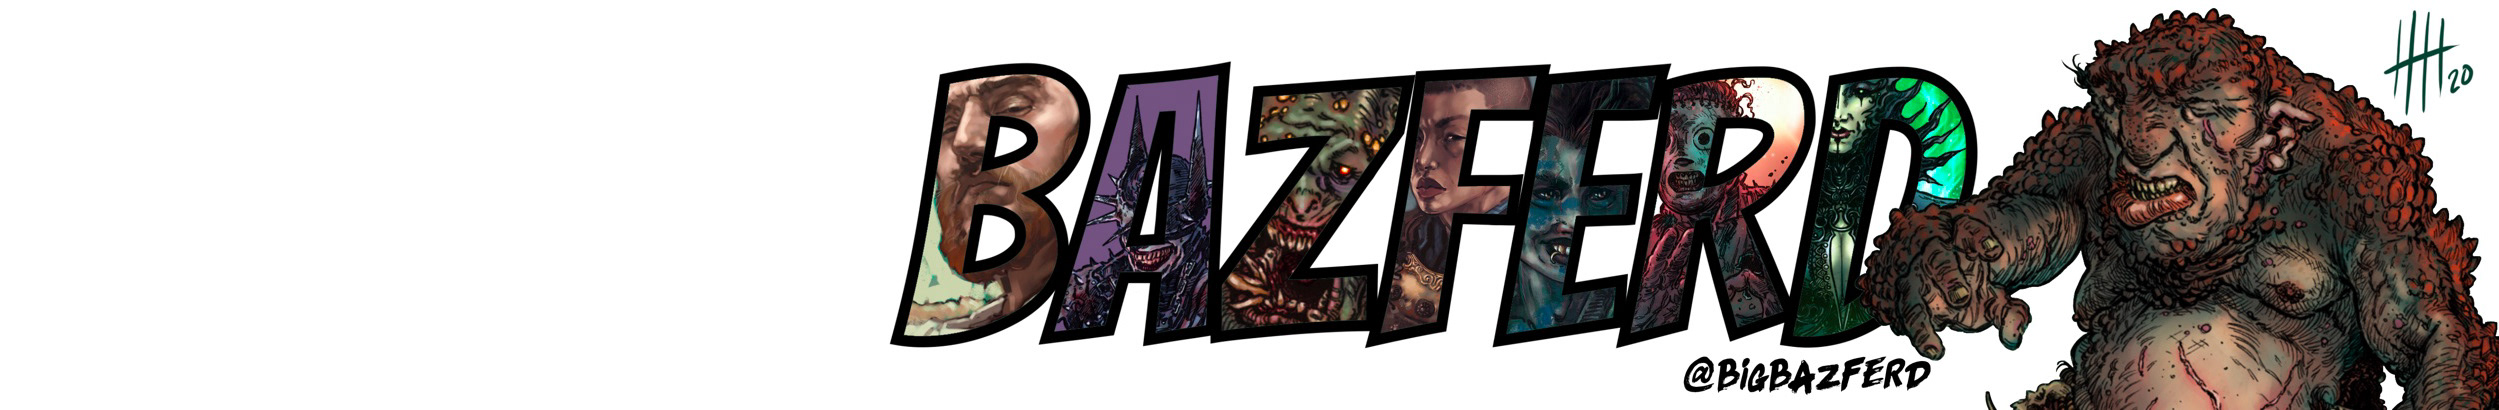 Banner del profilo di Bazferd ...